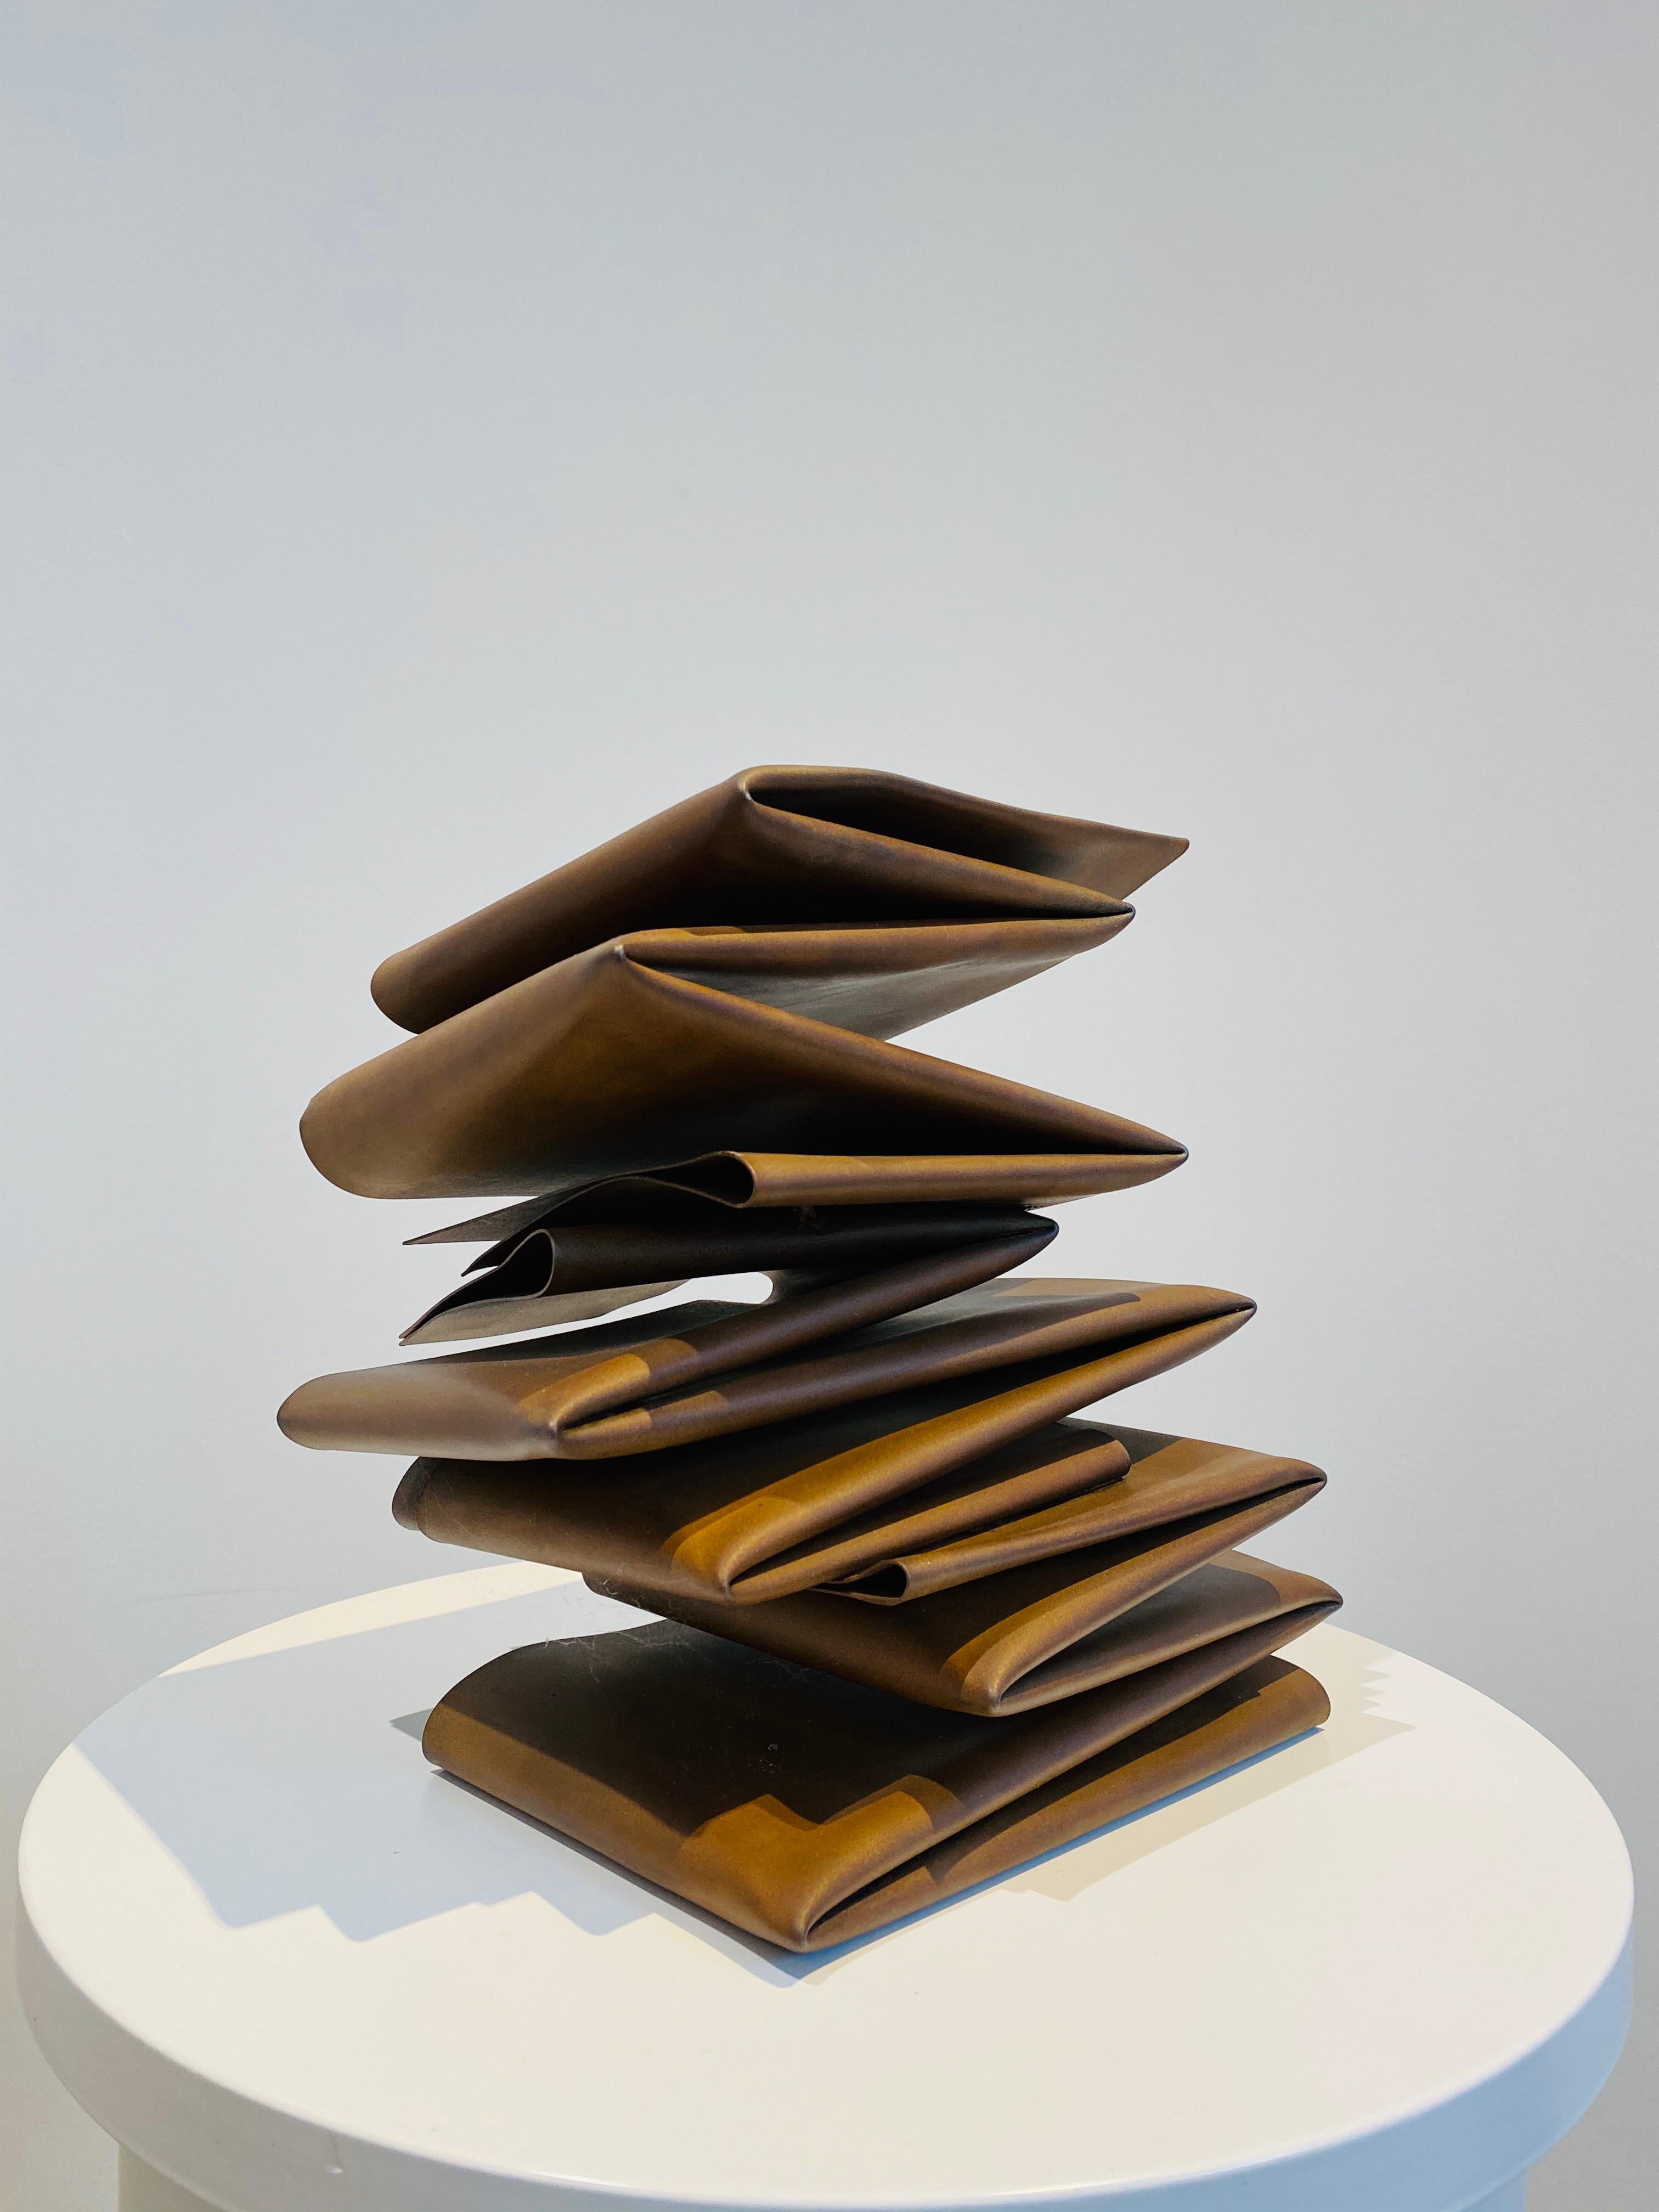 Pliage, 2017, Corten steel, minimalist, abstract, sculpture - Sculpture by Etienne Viard